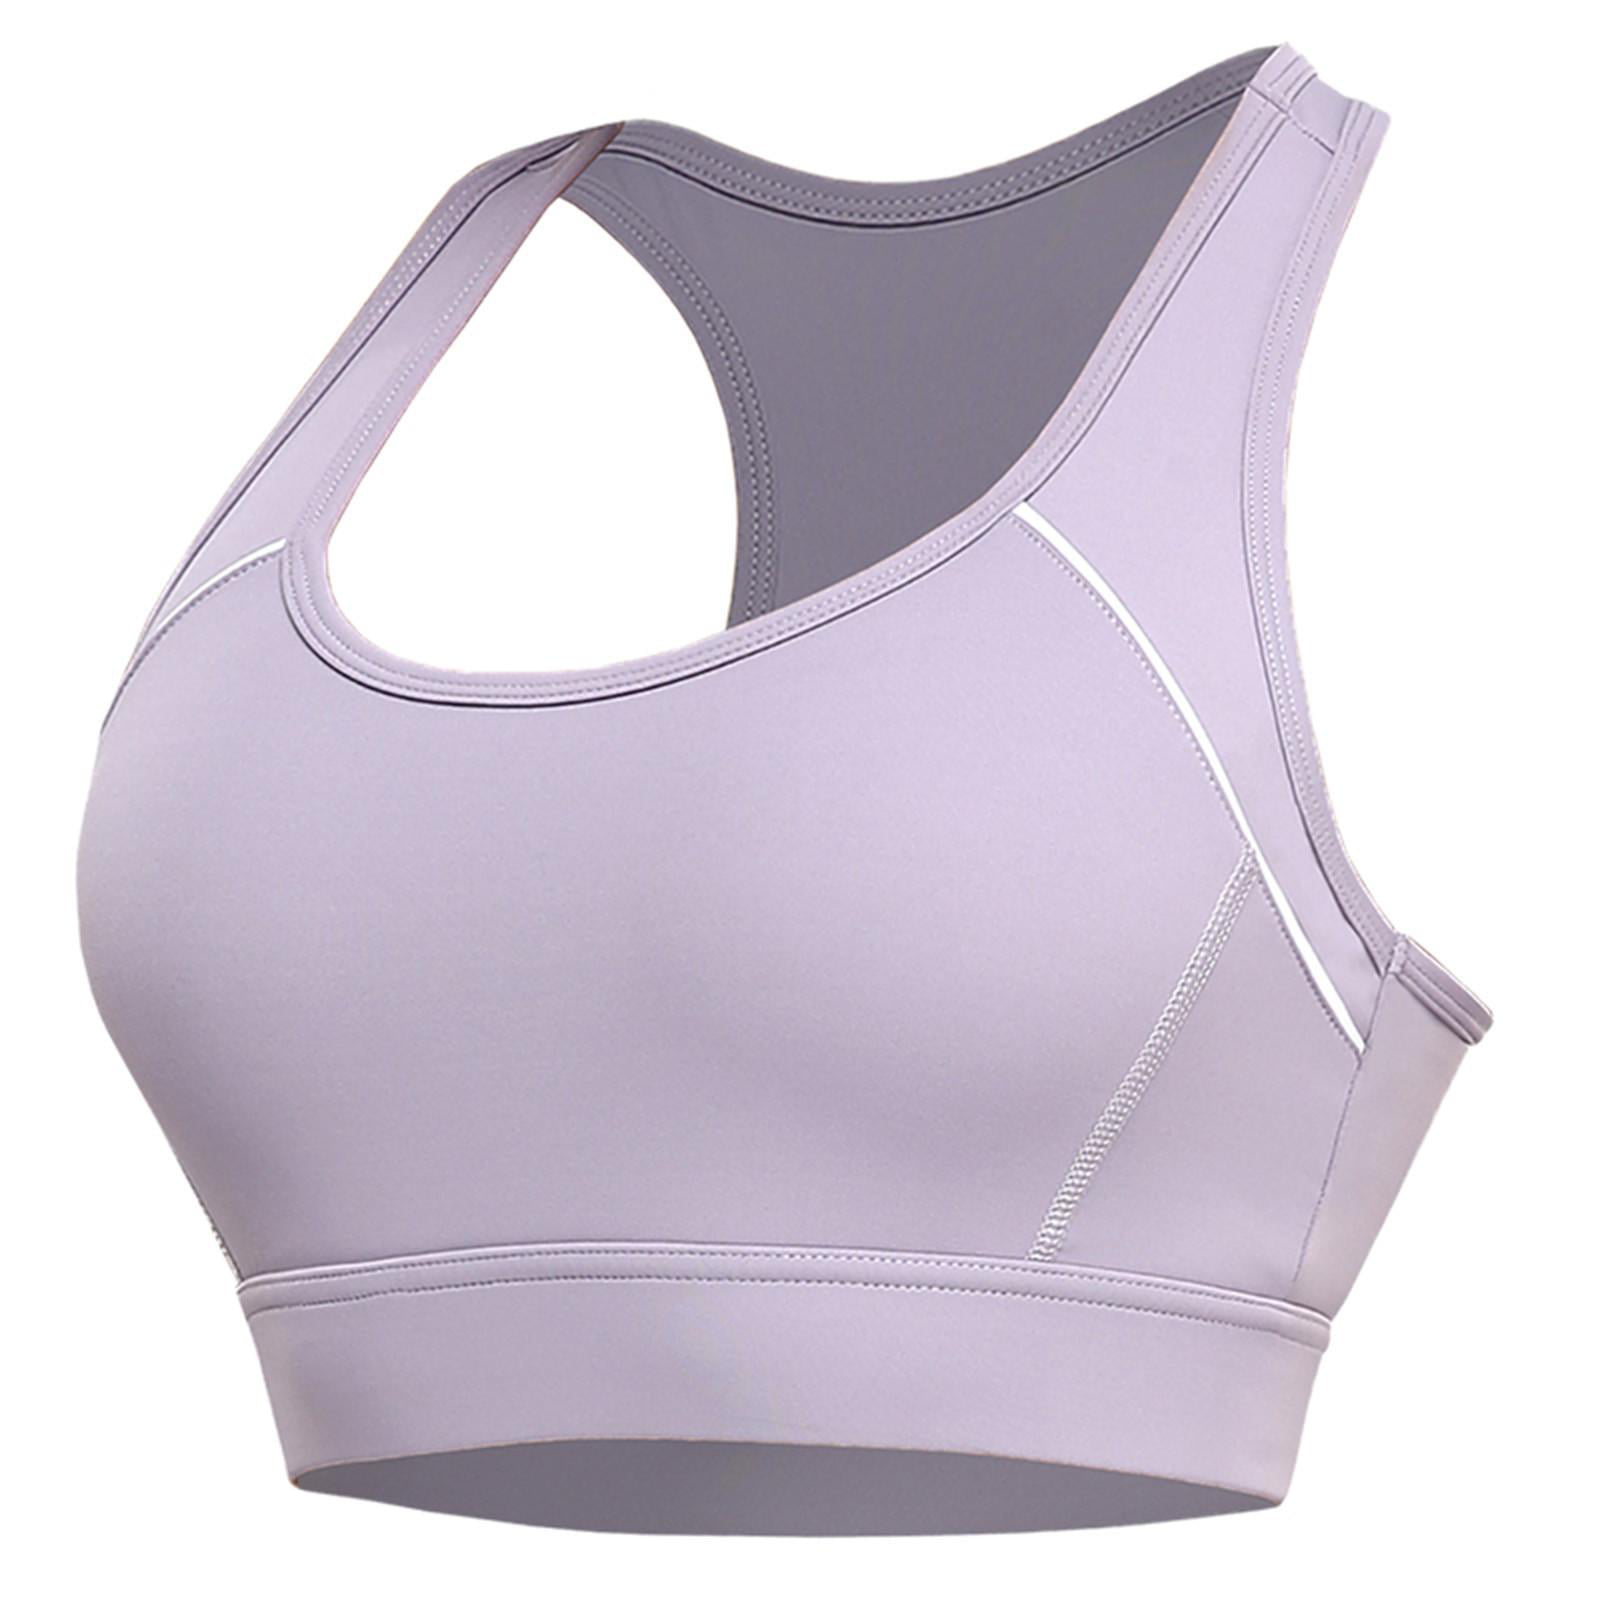 Tdoqot Women's Seamless Raceback High Impact Cotton linen Sports Bra Purple  Size XL